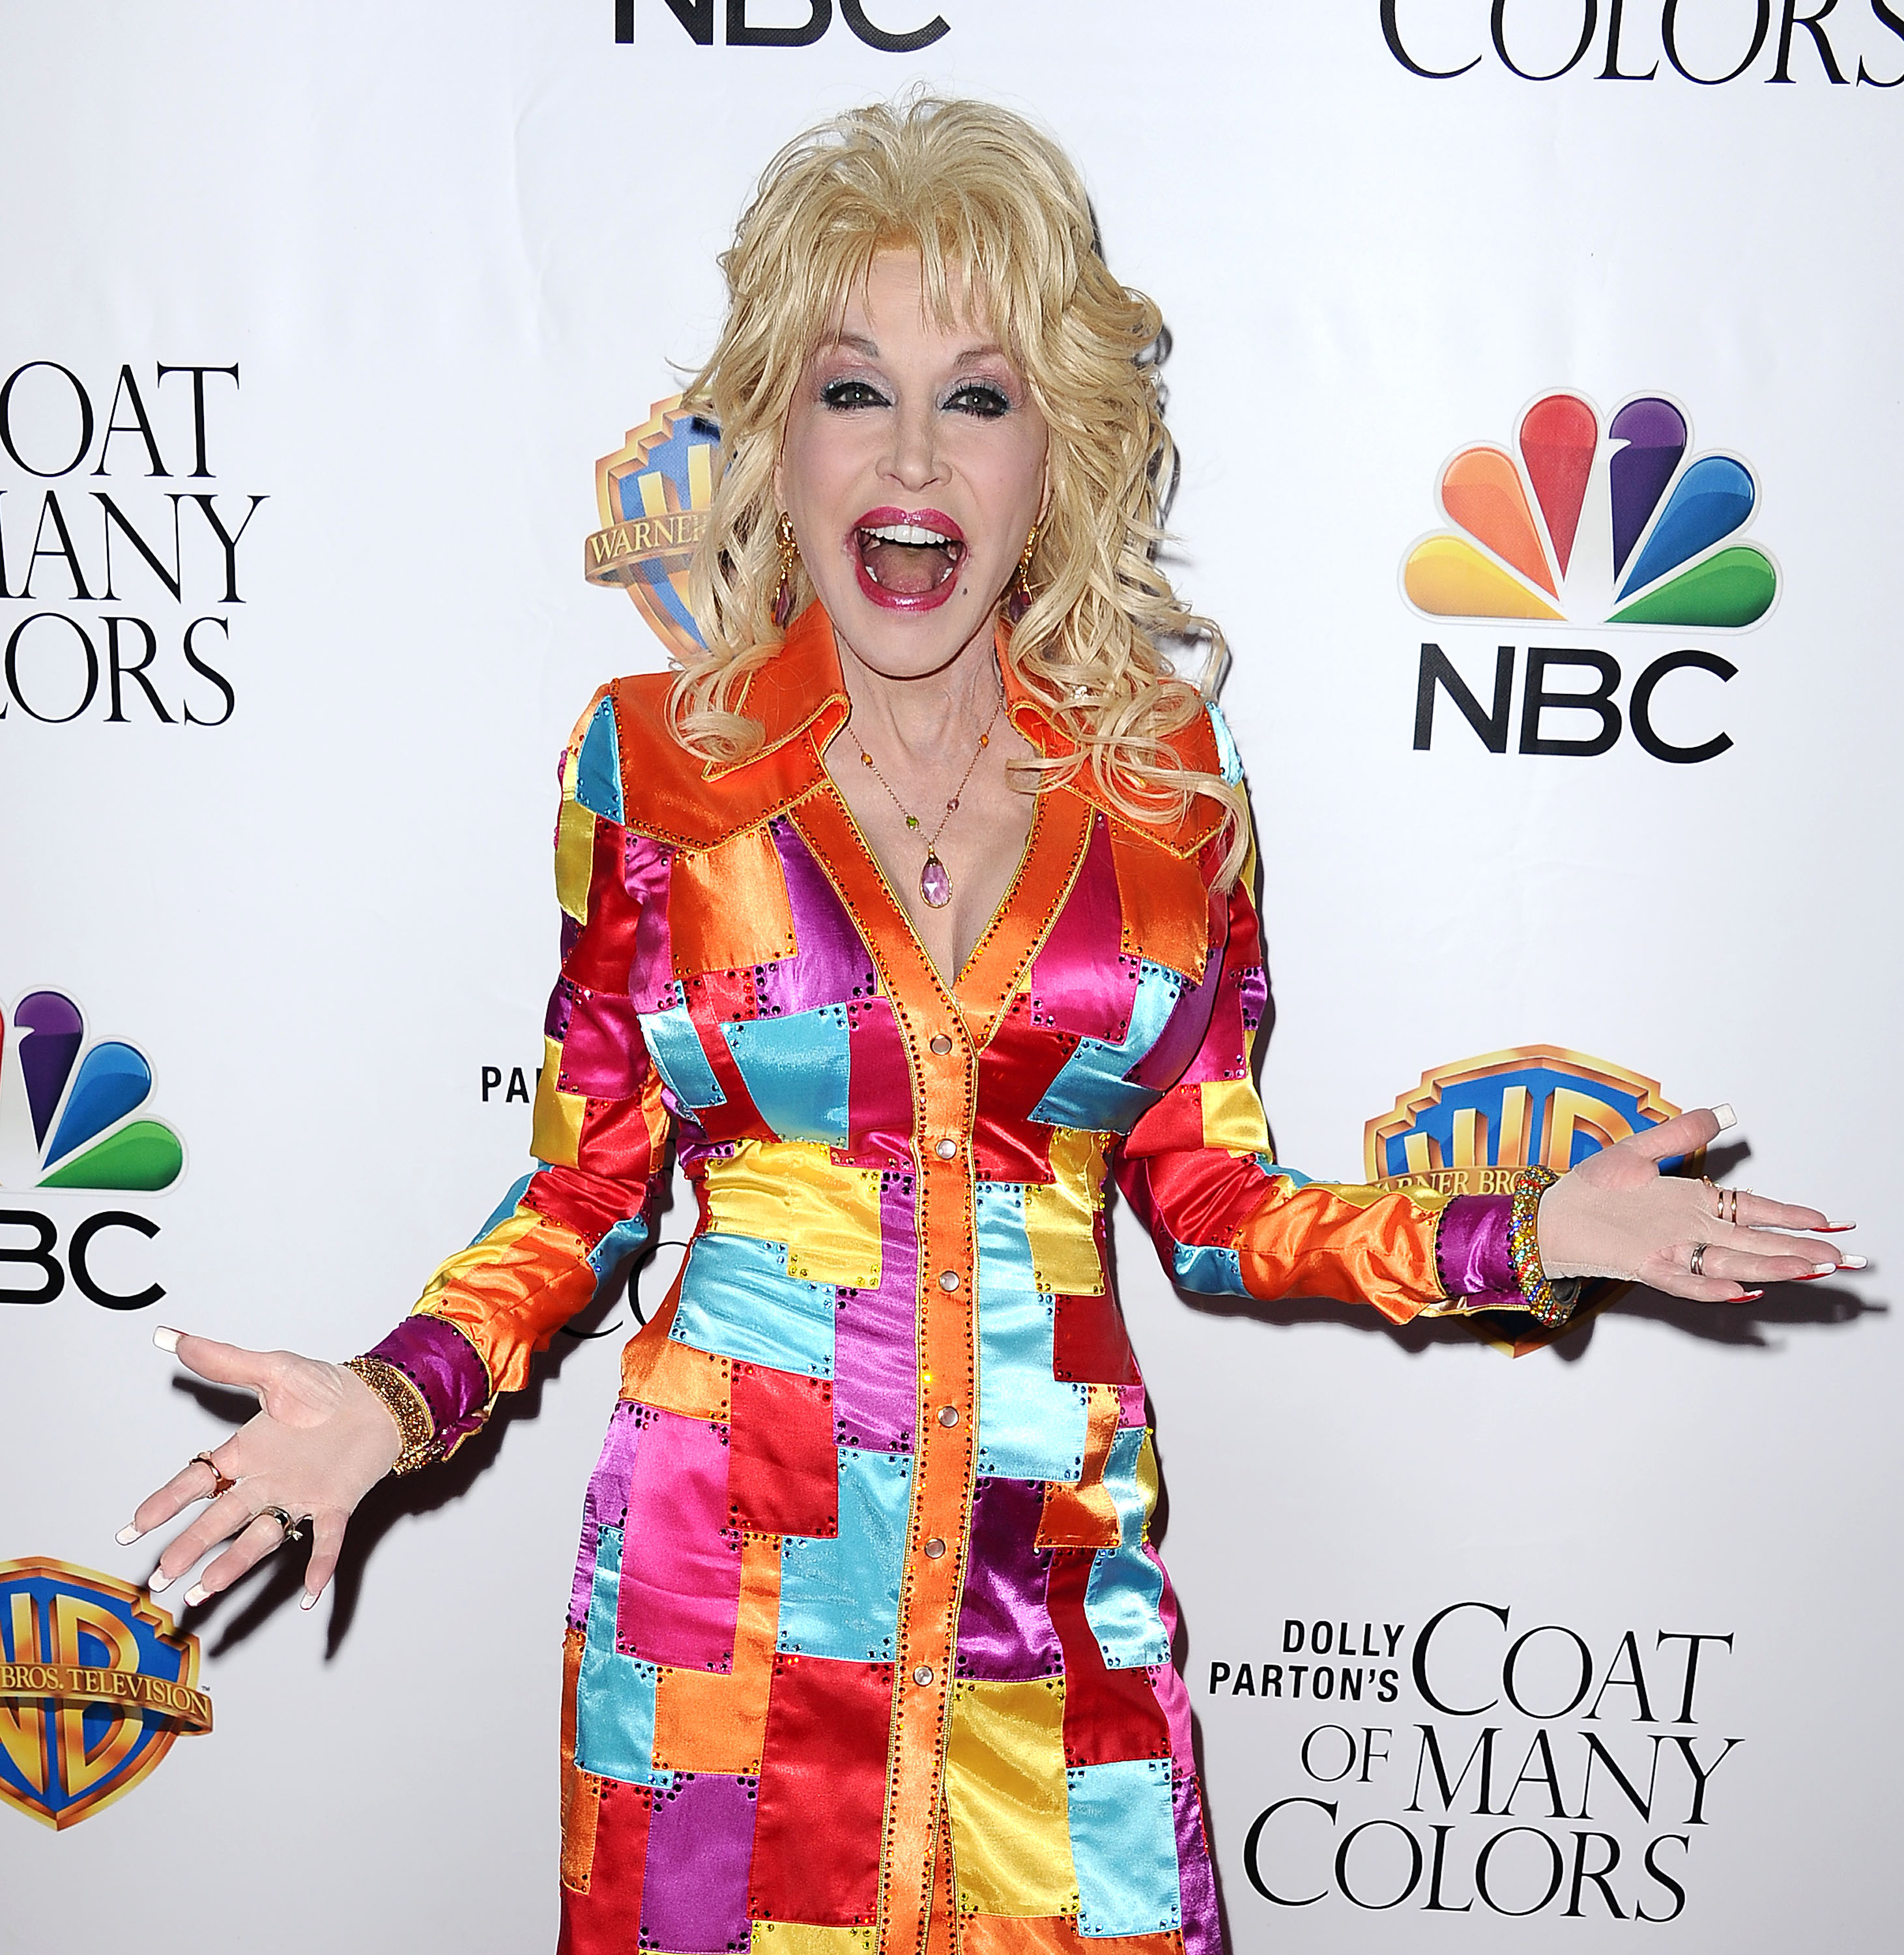 Dolly-Parton-Coat-of-Many-Colors